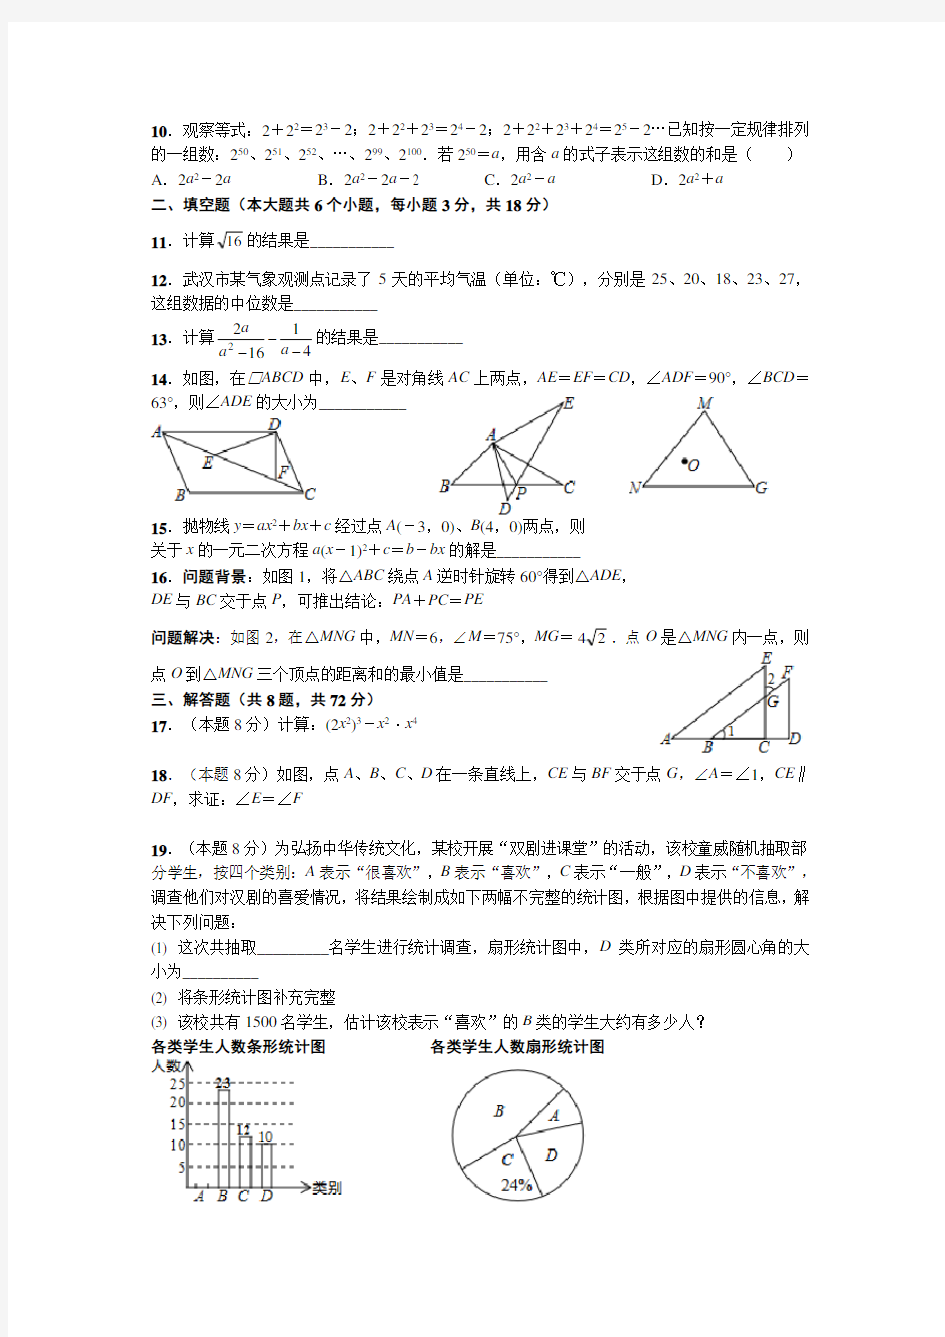 (完整版)2019年武汉市中考数学试题及答案